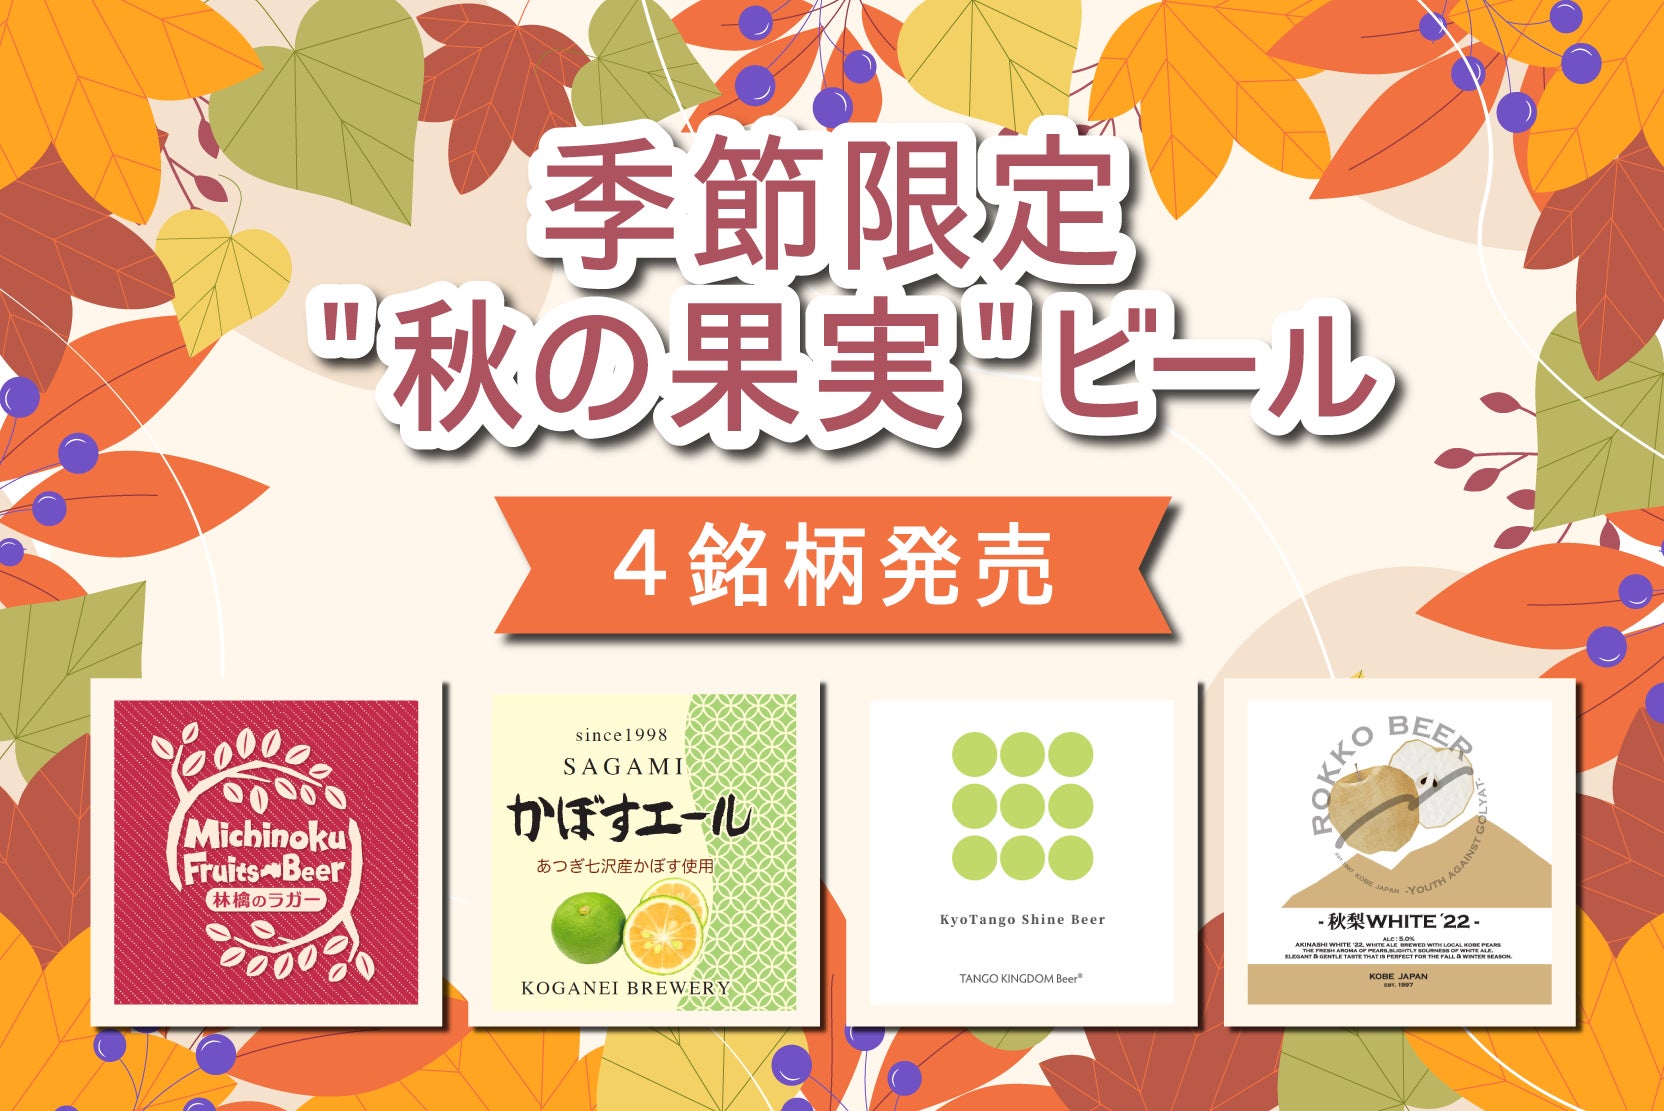 一般社団法人ChefooDo/シェフードと株式会社FERMENT8が日本酒オーダーシステム「MySAKE.jp」を活用した海外展開に向け業務提携を締結